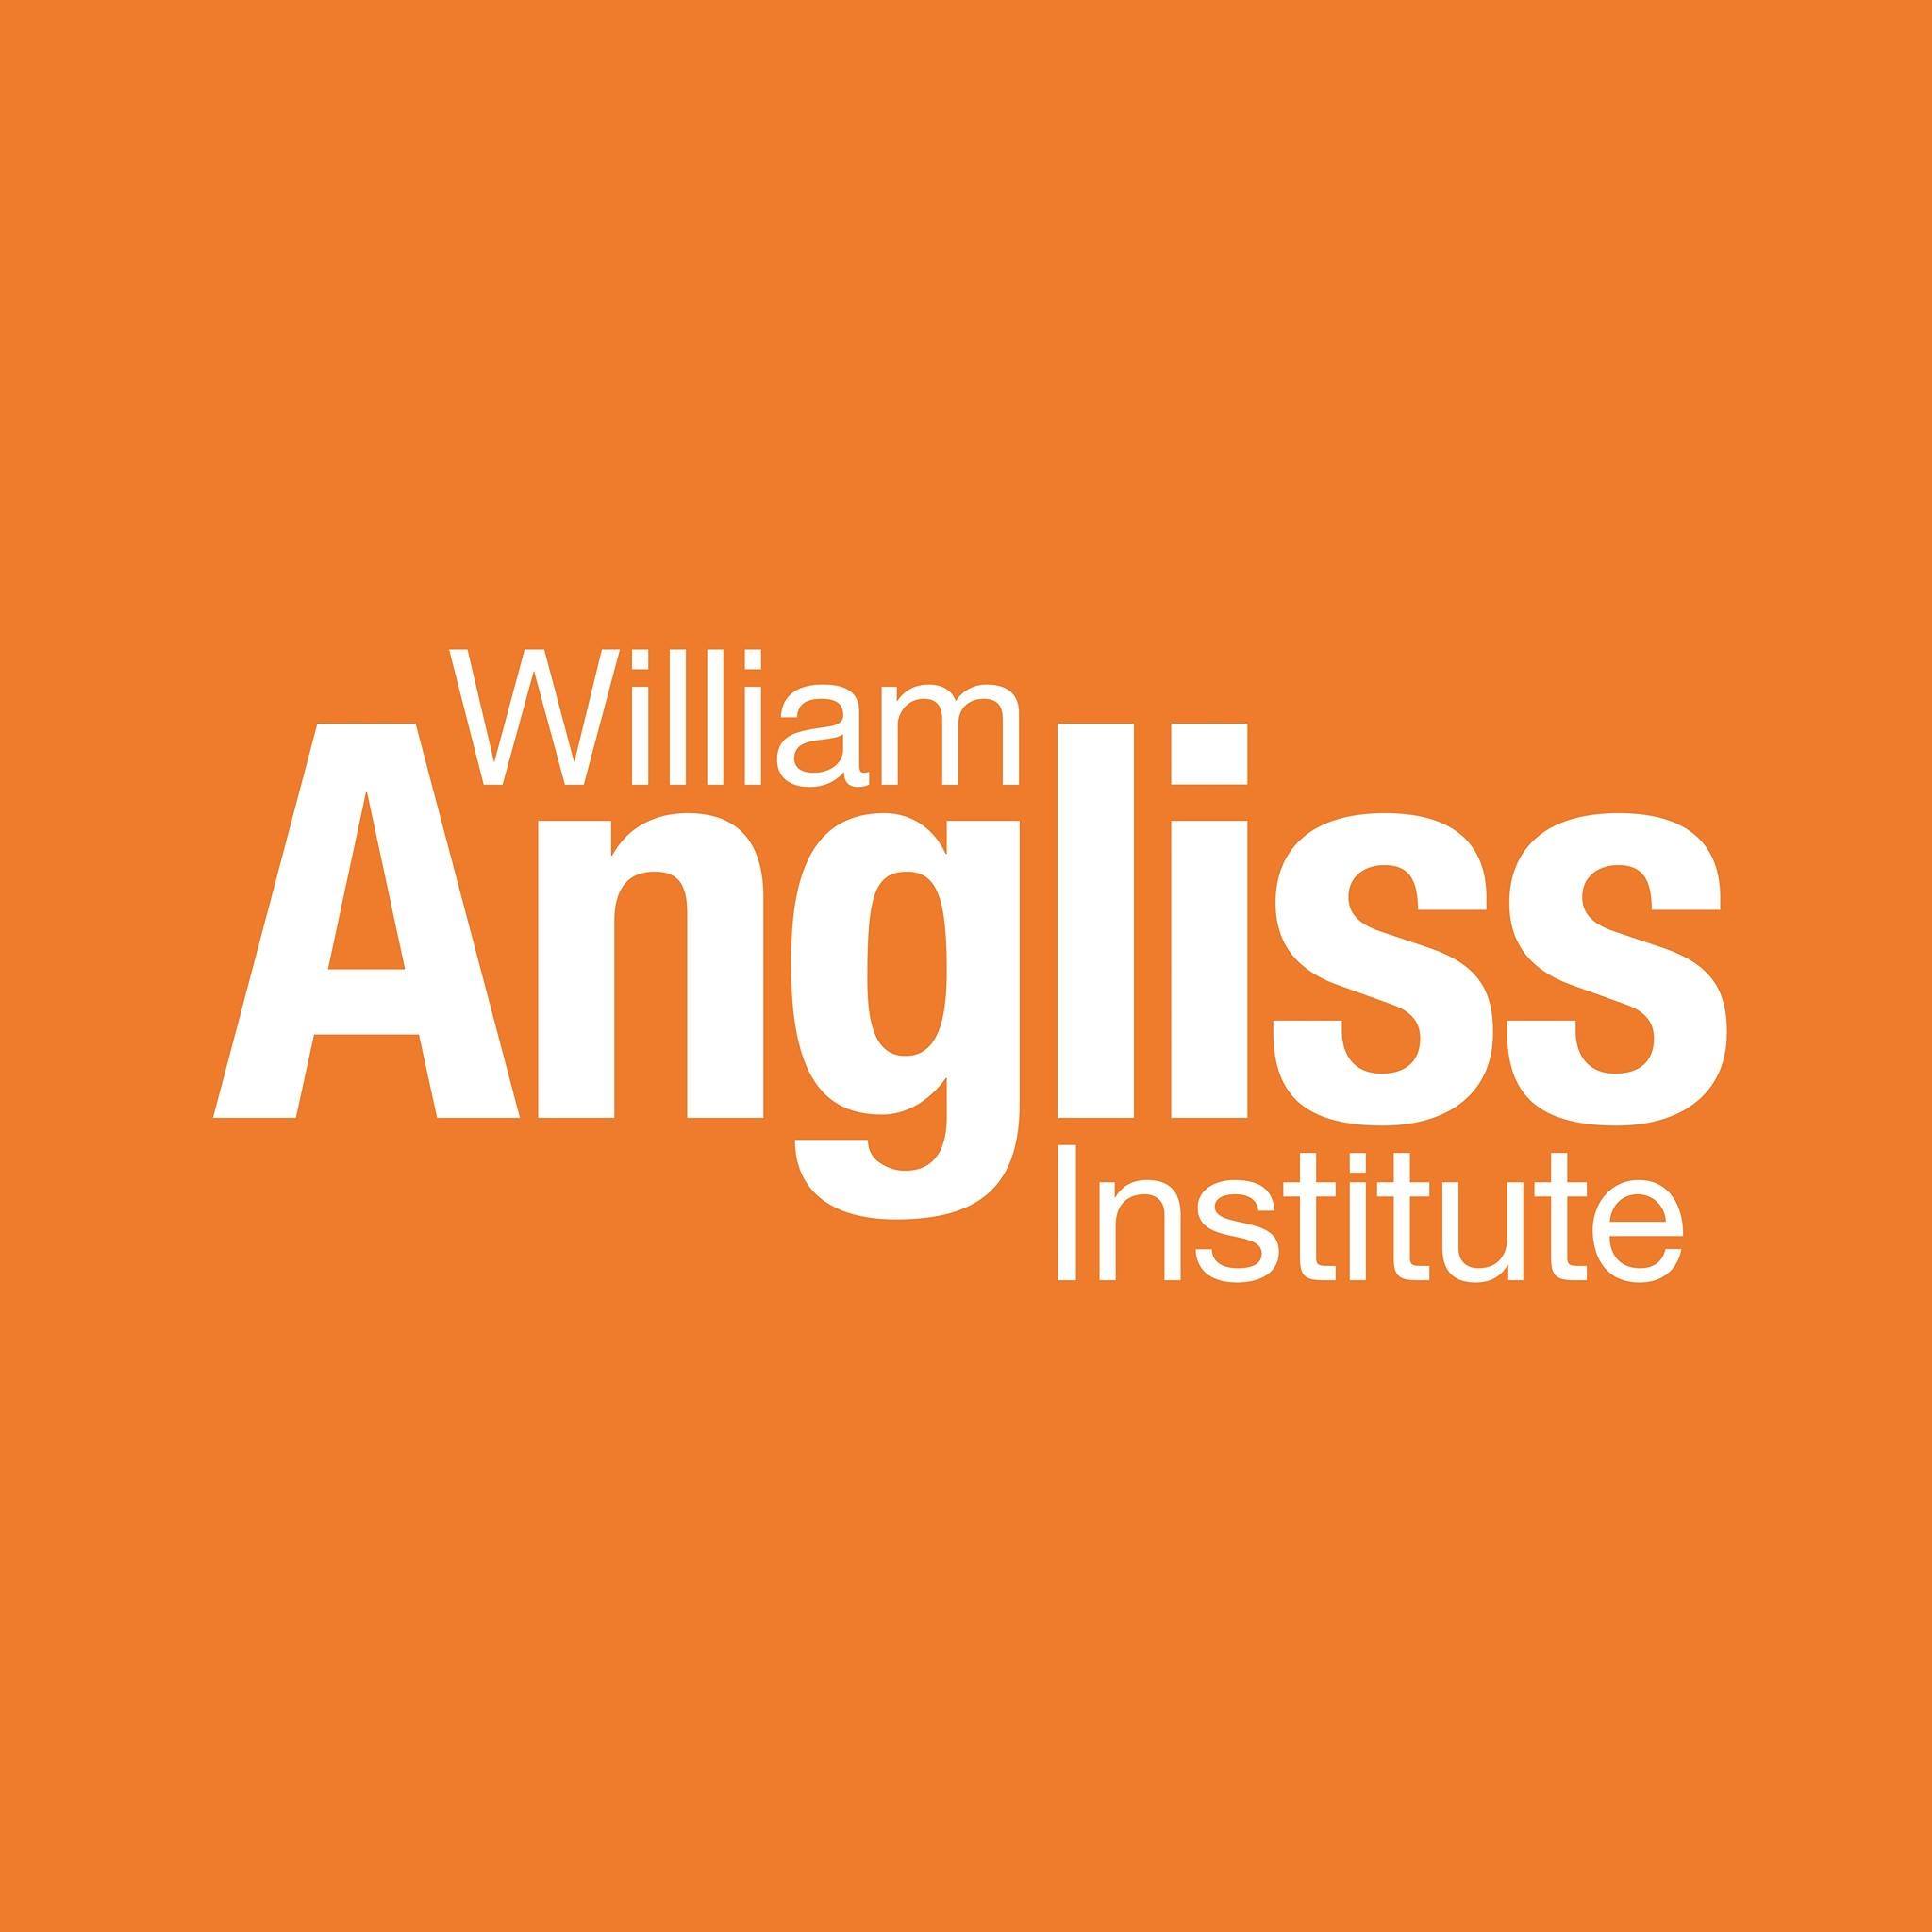 William Angliss Institute Logo